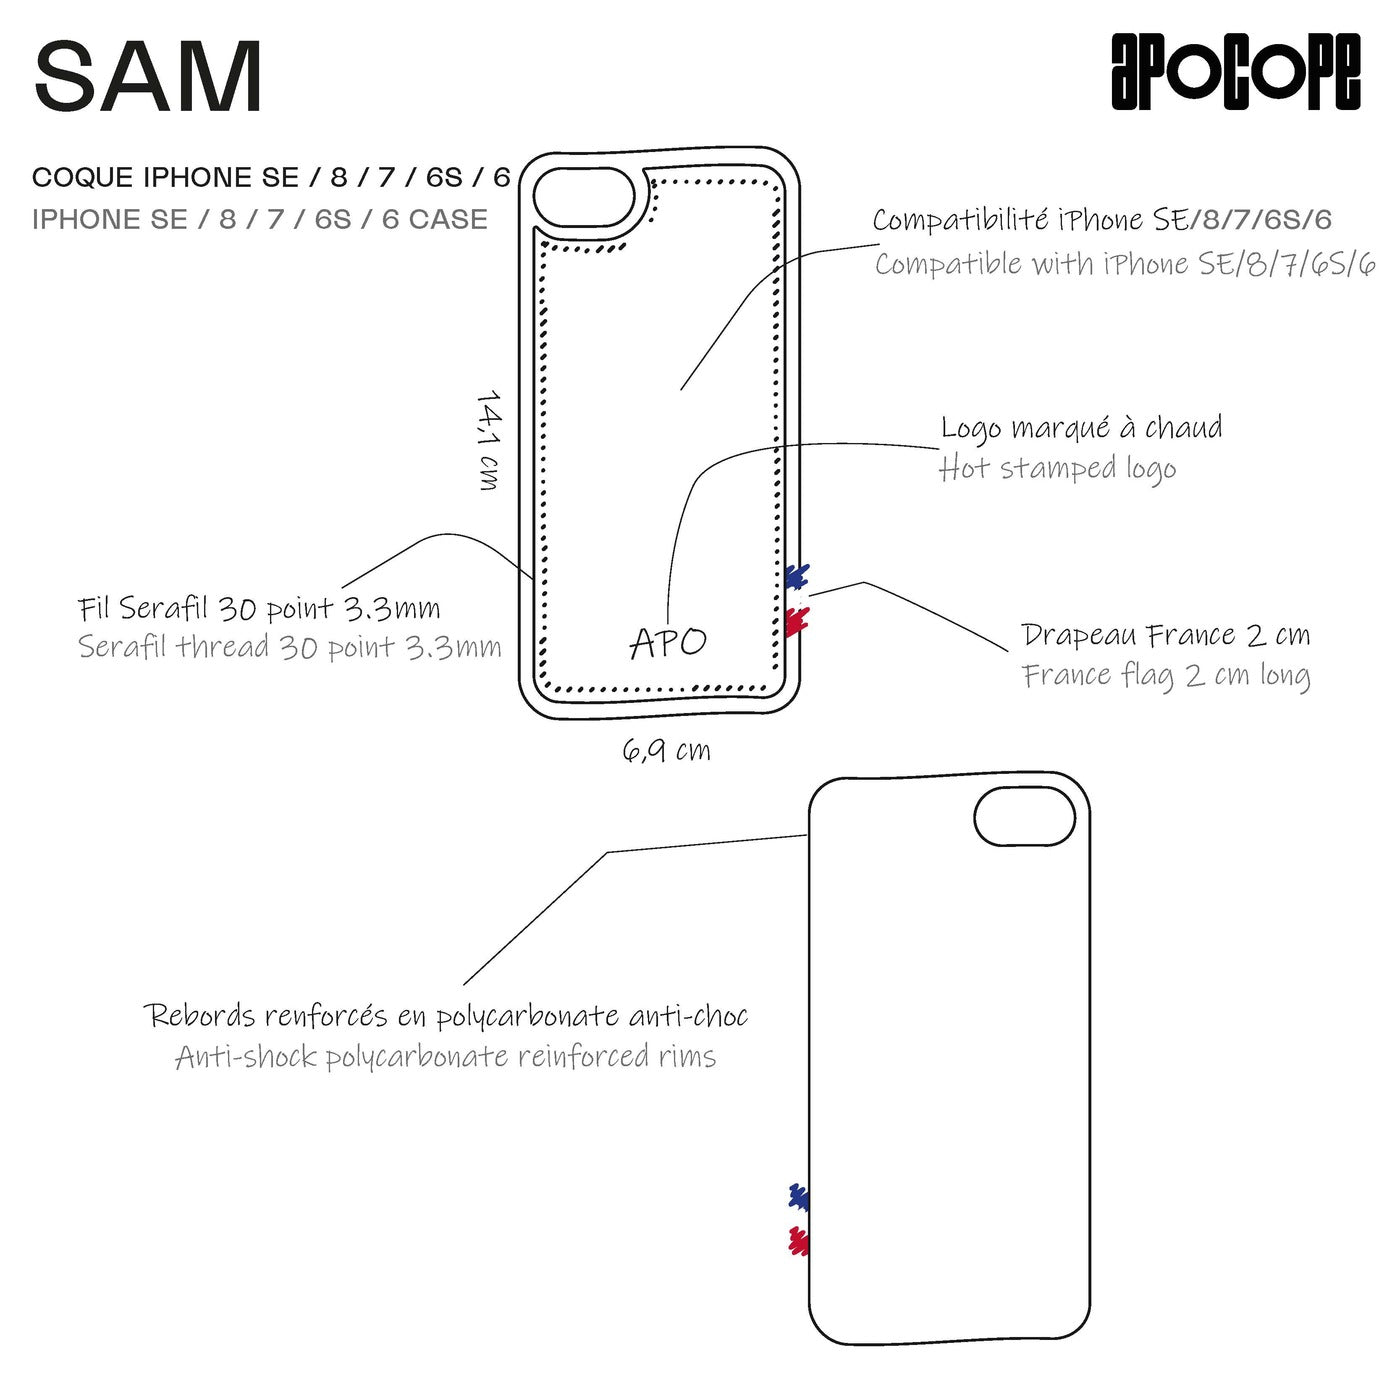 SAM - Coque iPhone SE / 8 / 7 / 6S / 6 en cuir recyclé - Bleu